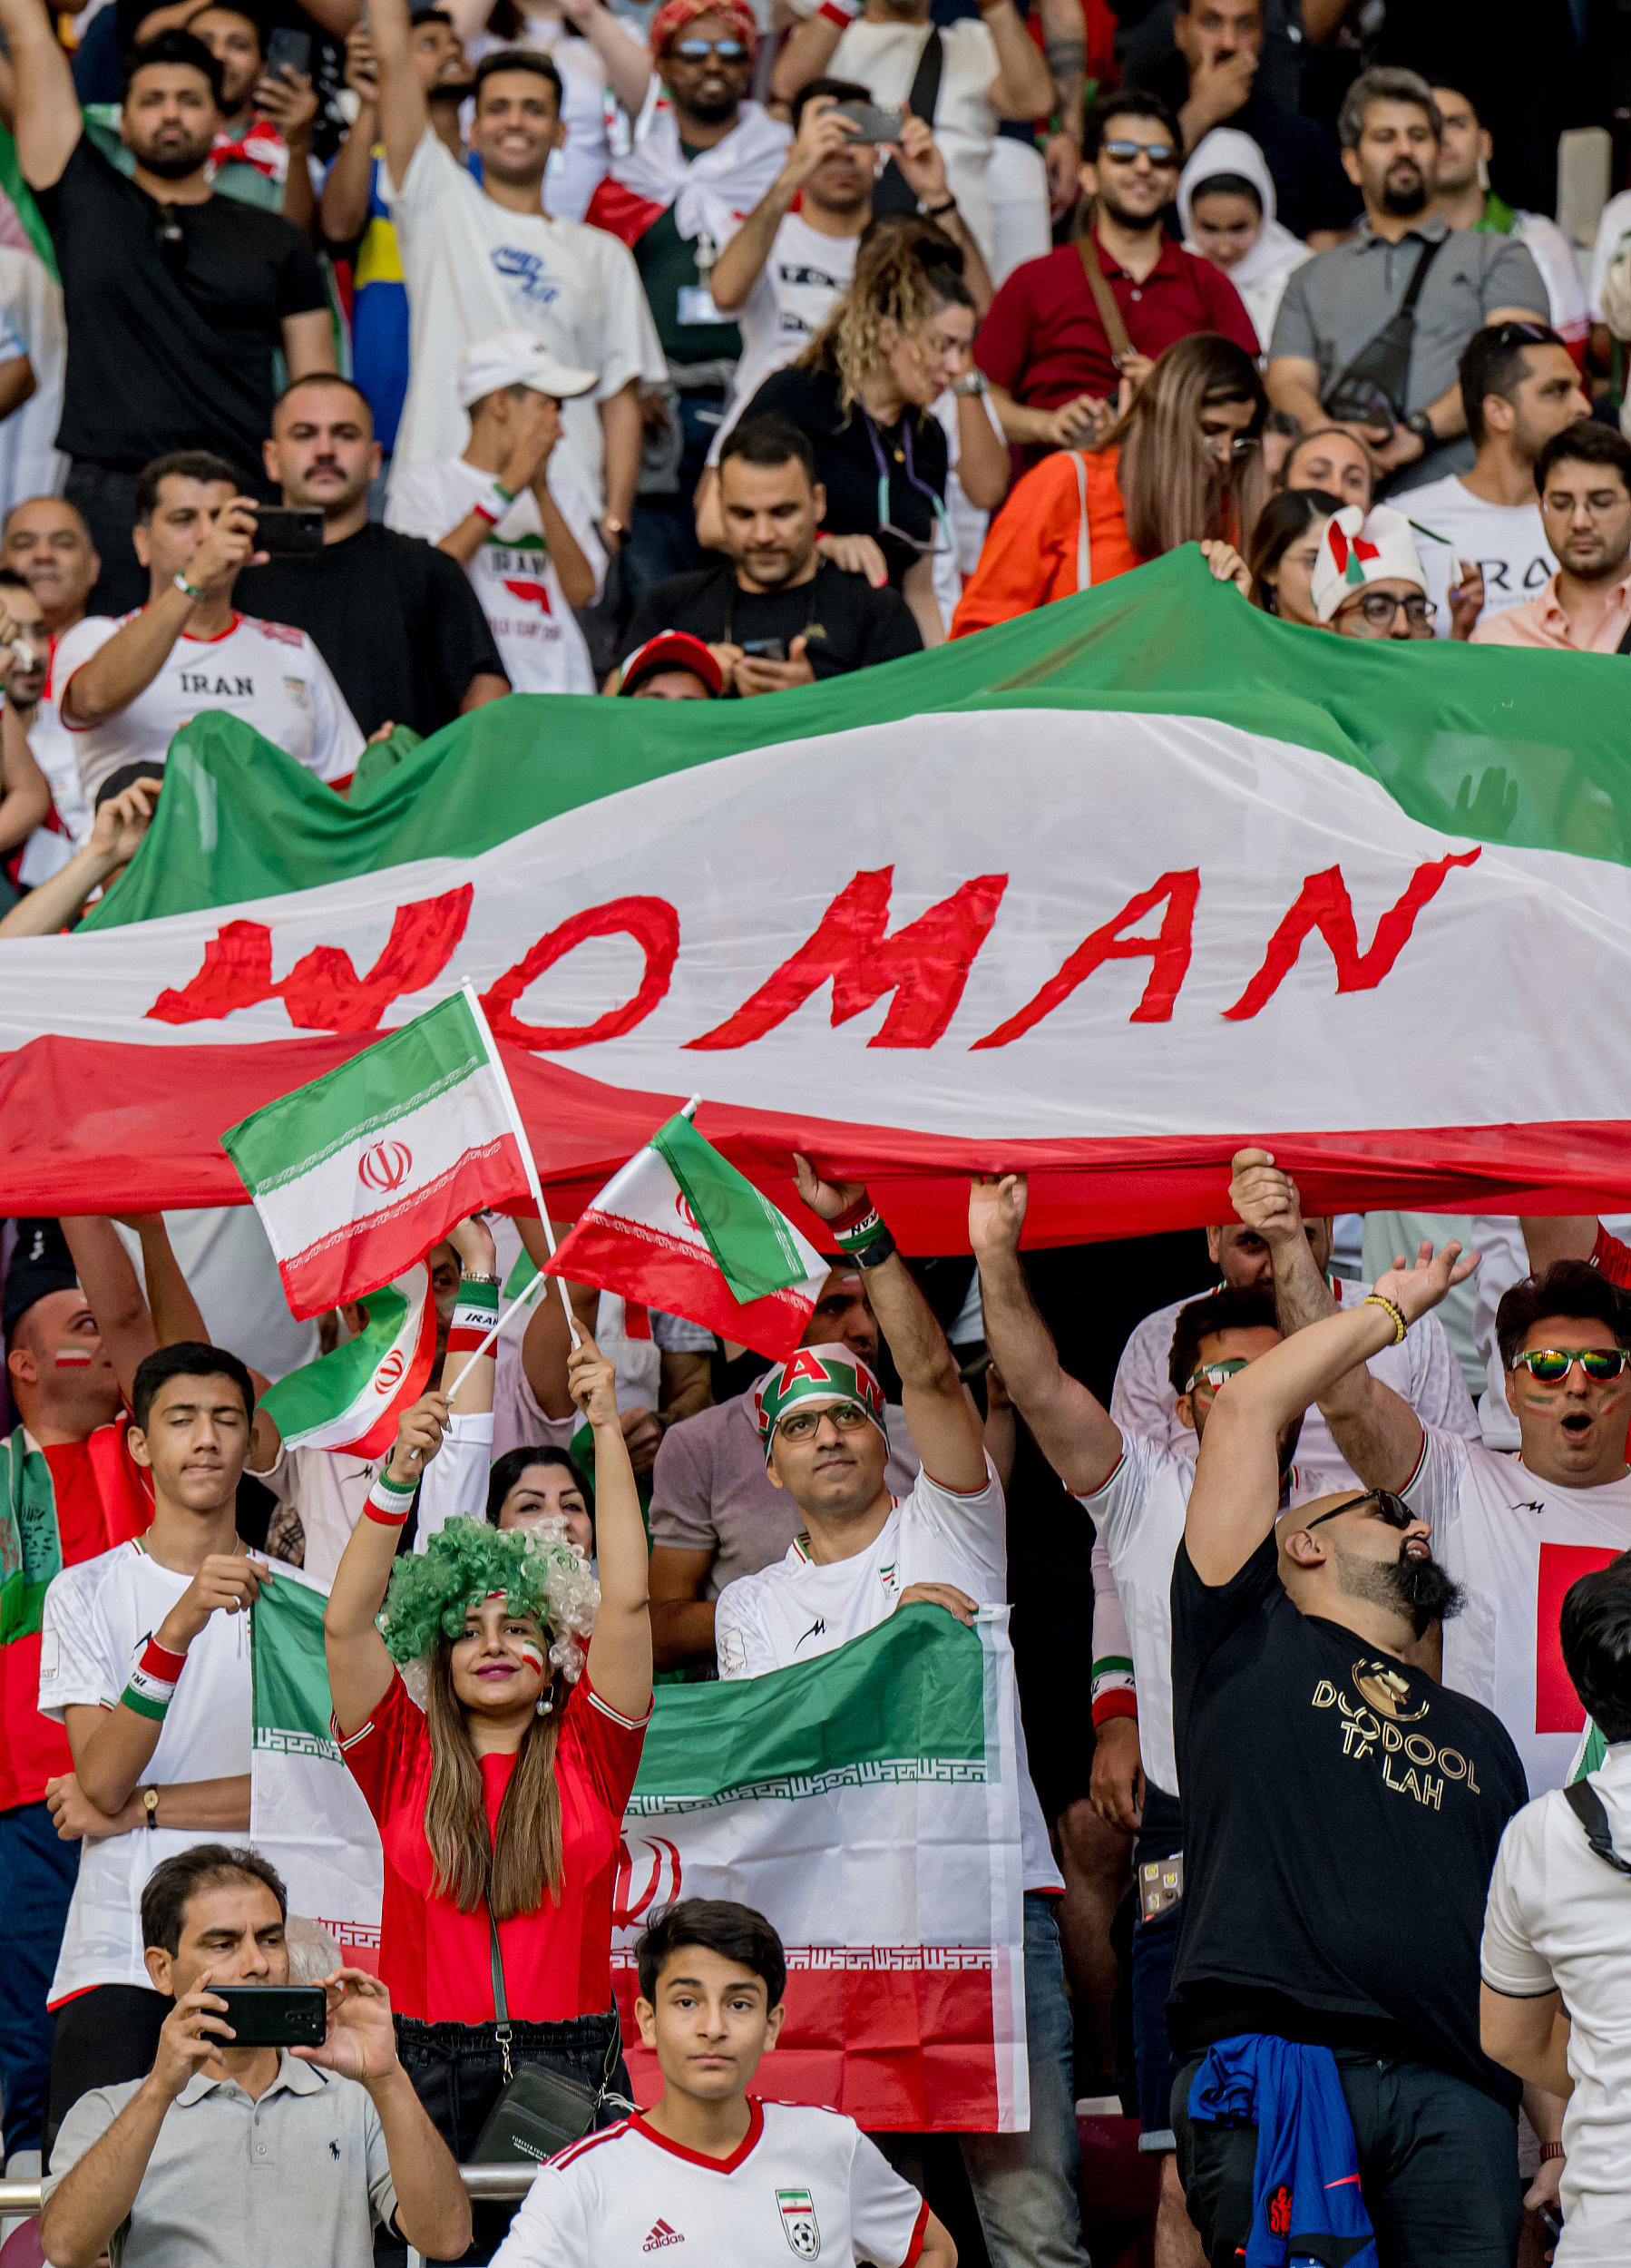 伊朗球迷挥舞着印有“妇女”字样的国旗欢呼。